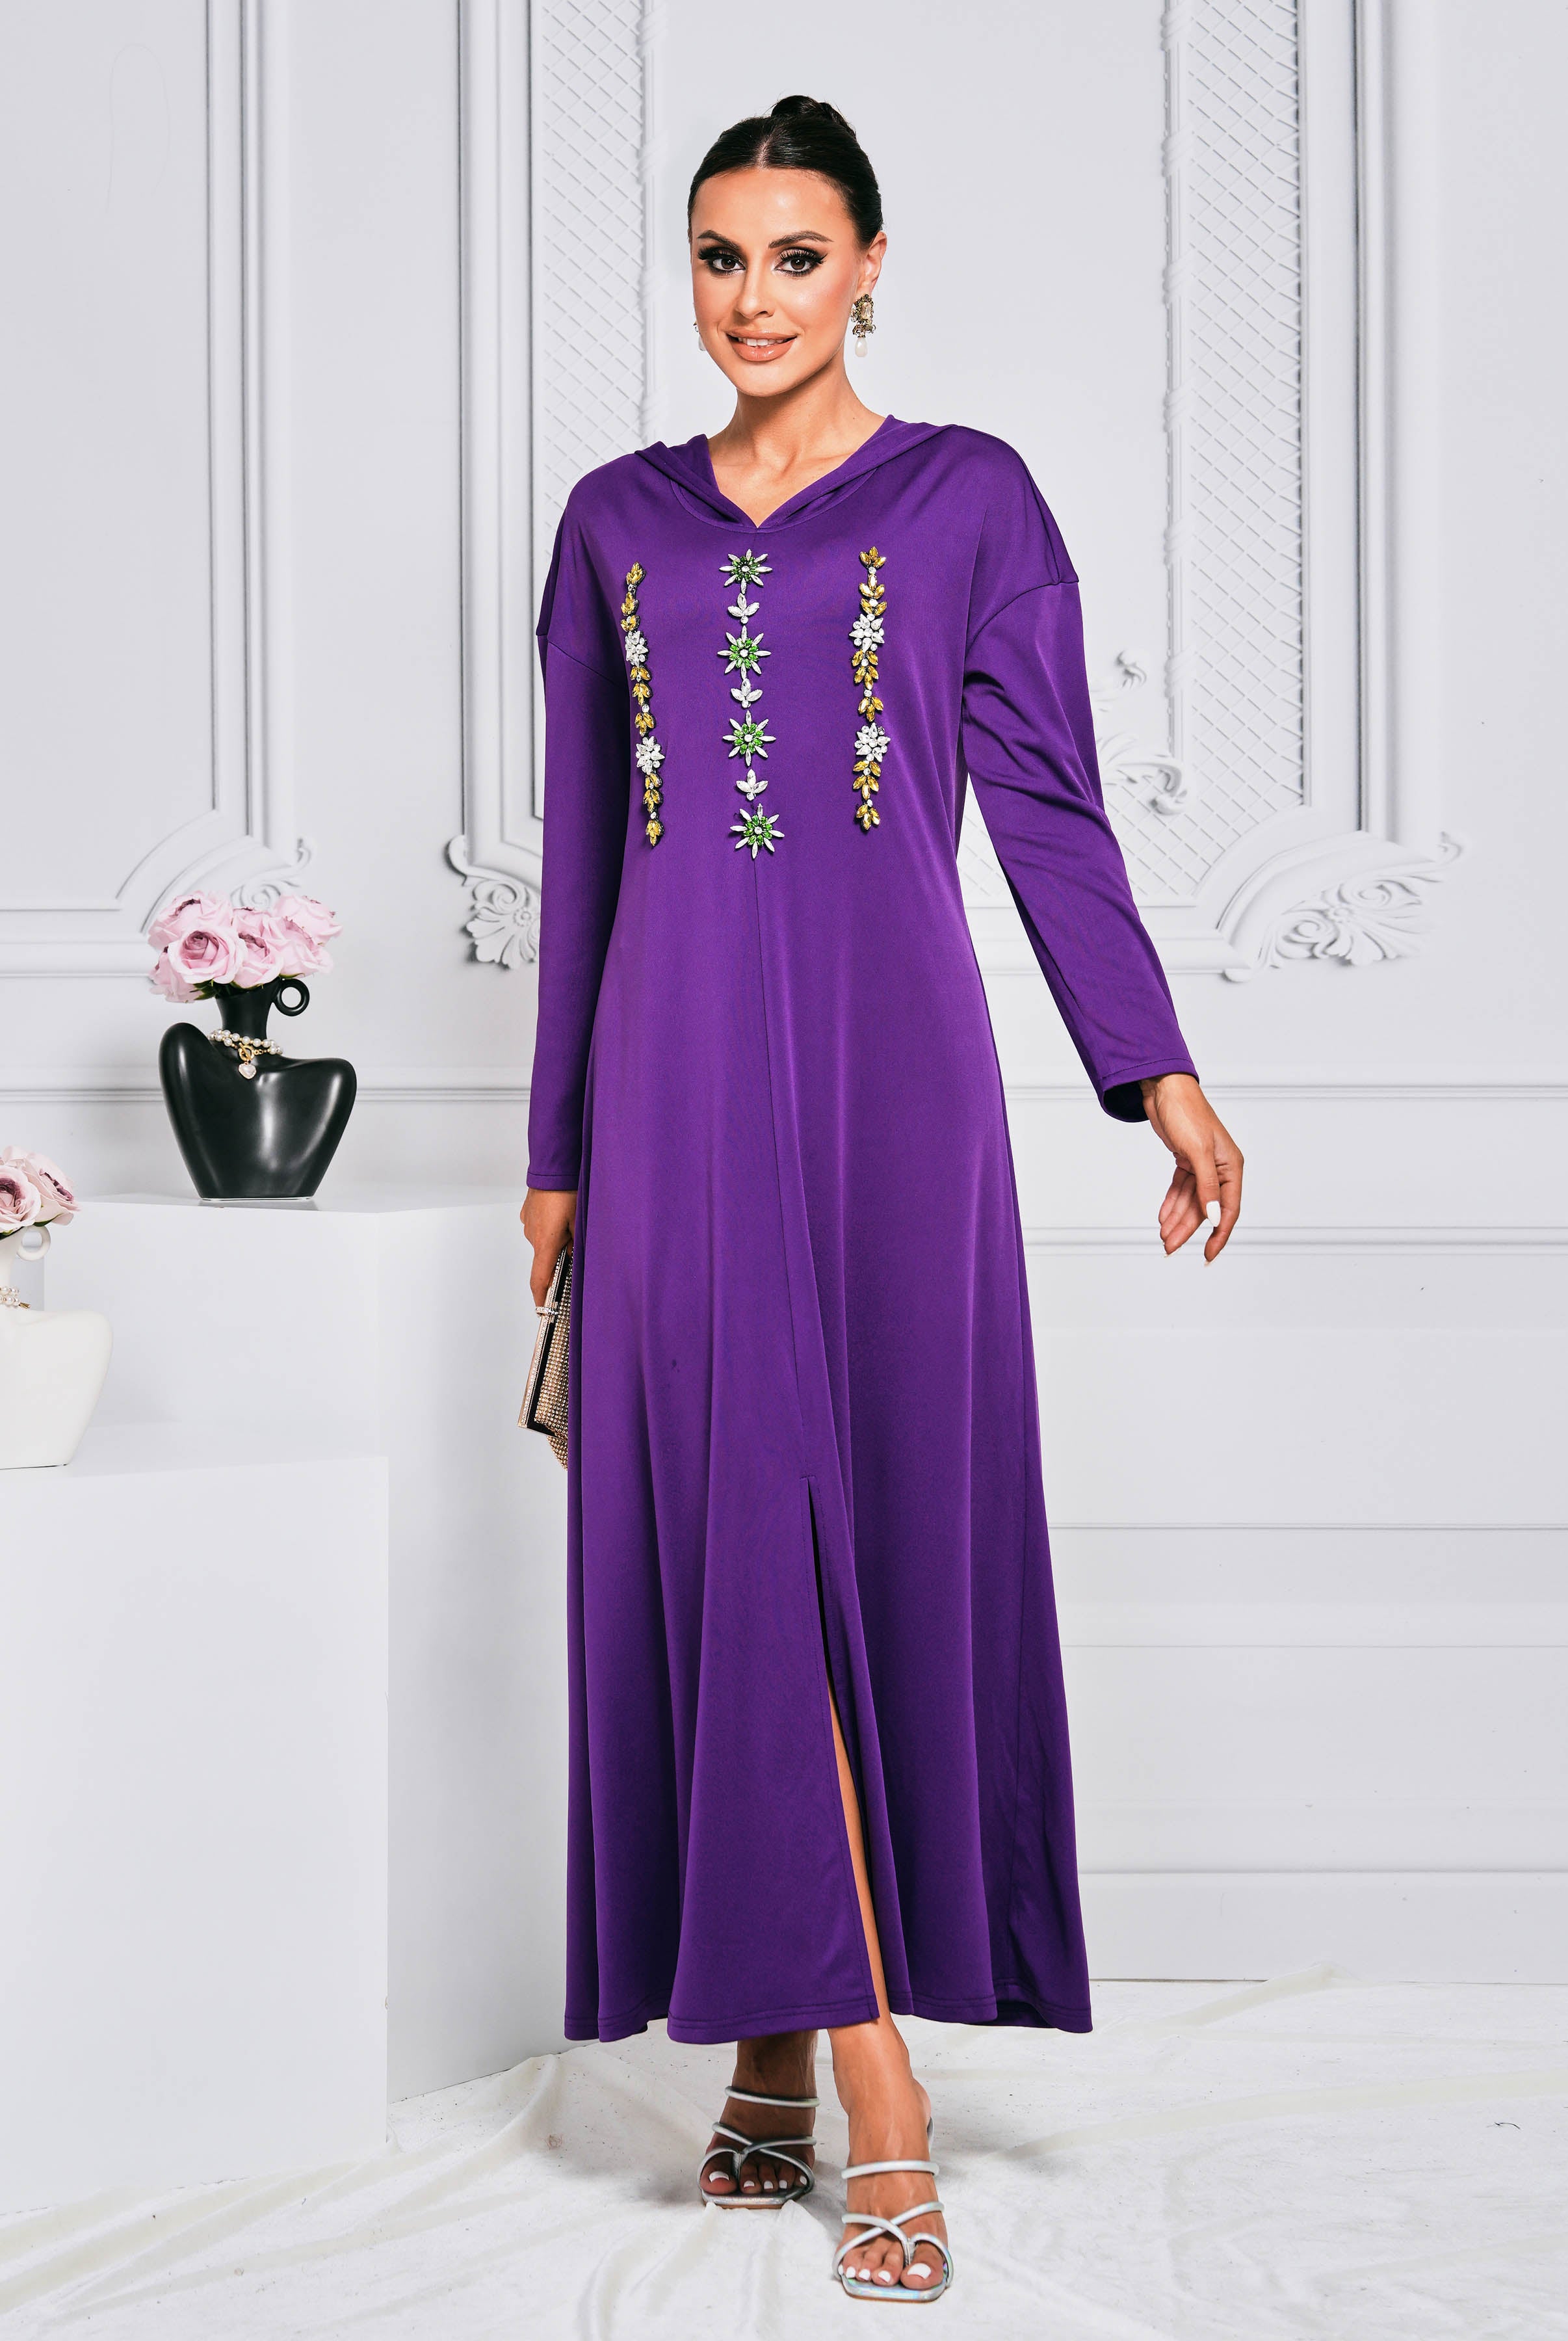 MISSORD Hooded Rhinestone Purple Maxi Dress